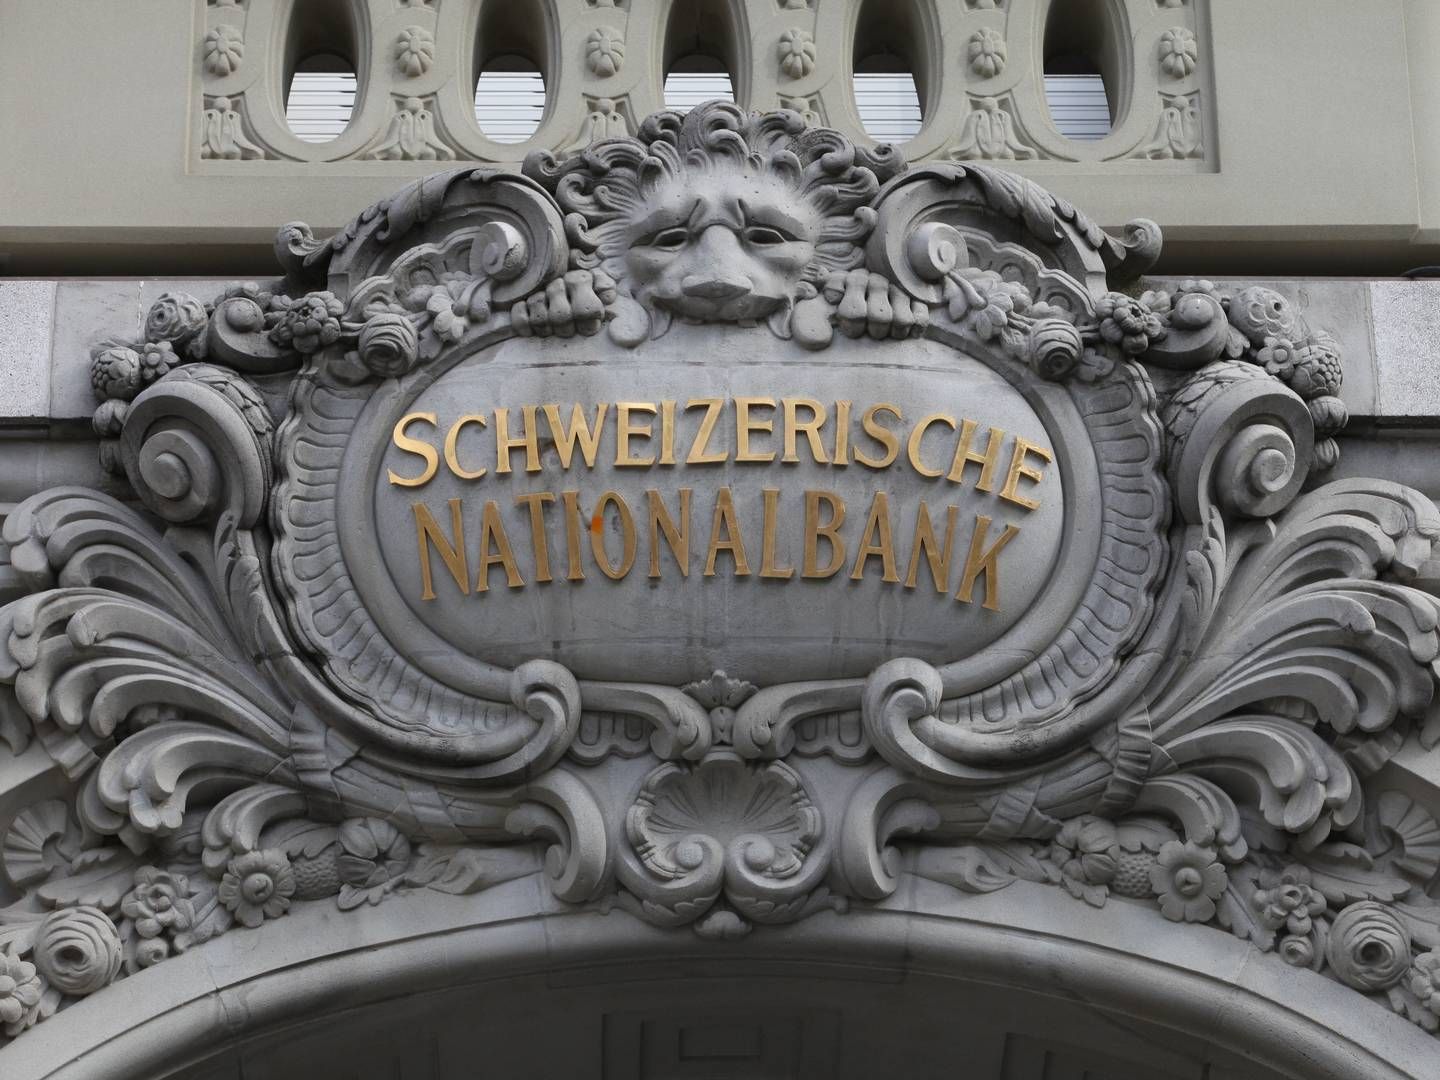 Will, dass die Inflation mittelfristig im Bereich der Preisstabilität bleibt: Die Schweizer Nationalbank. | Photo: picture alliance / dts-Agentur | -